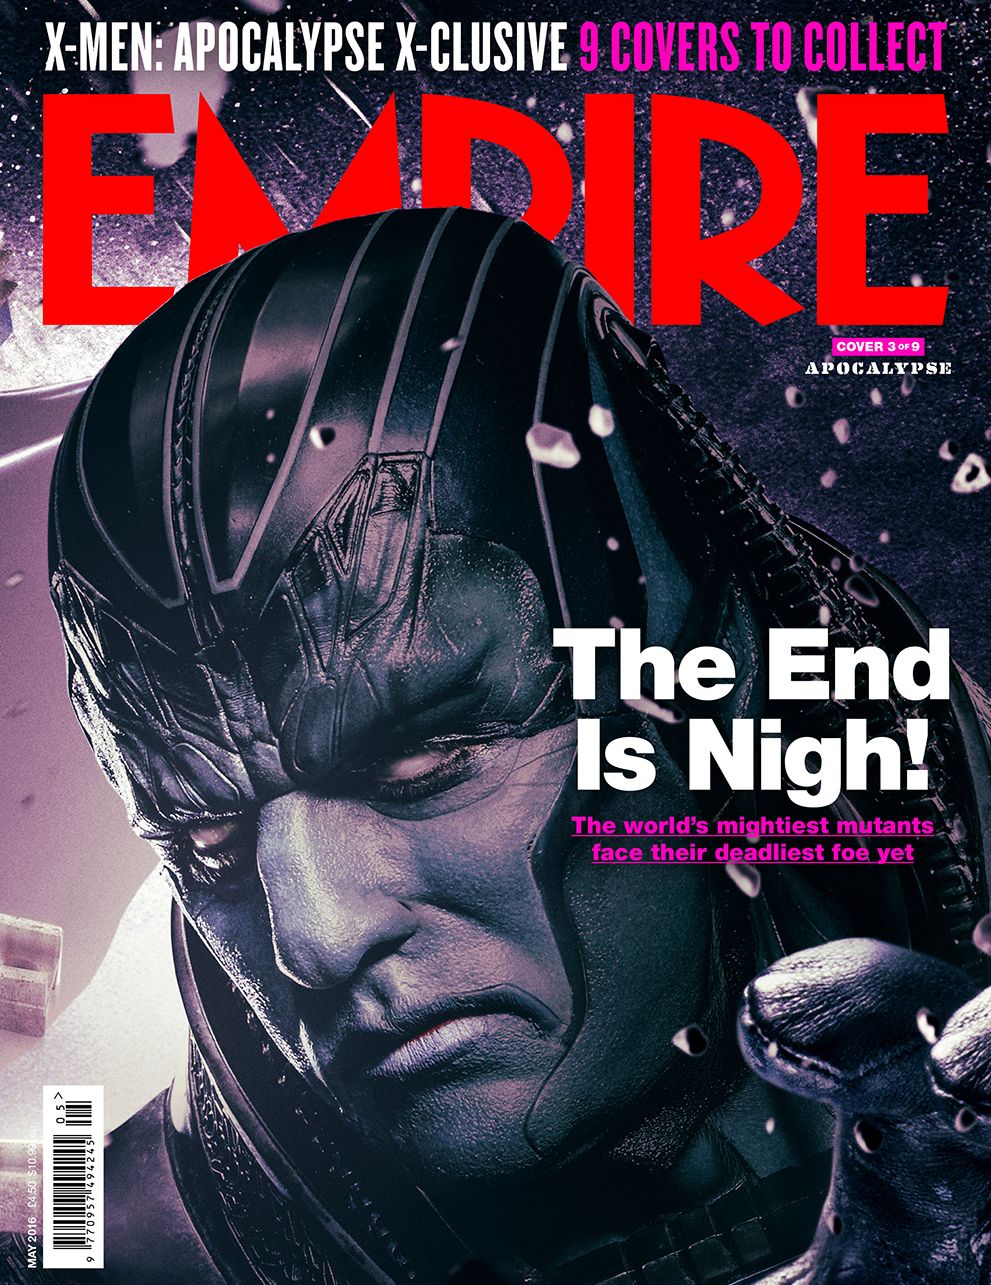 Apocalype X-Men: Apocalypse Empire Cover